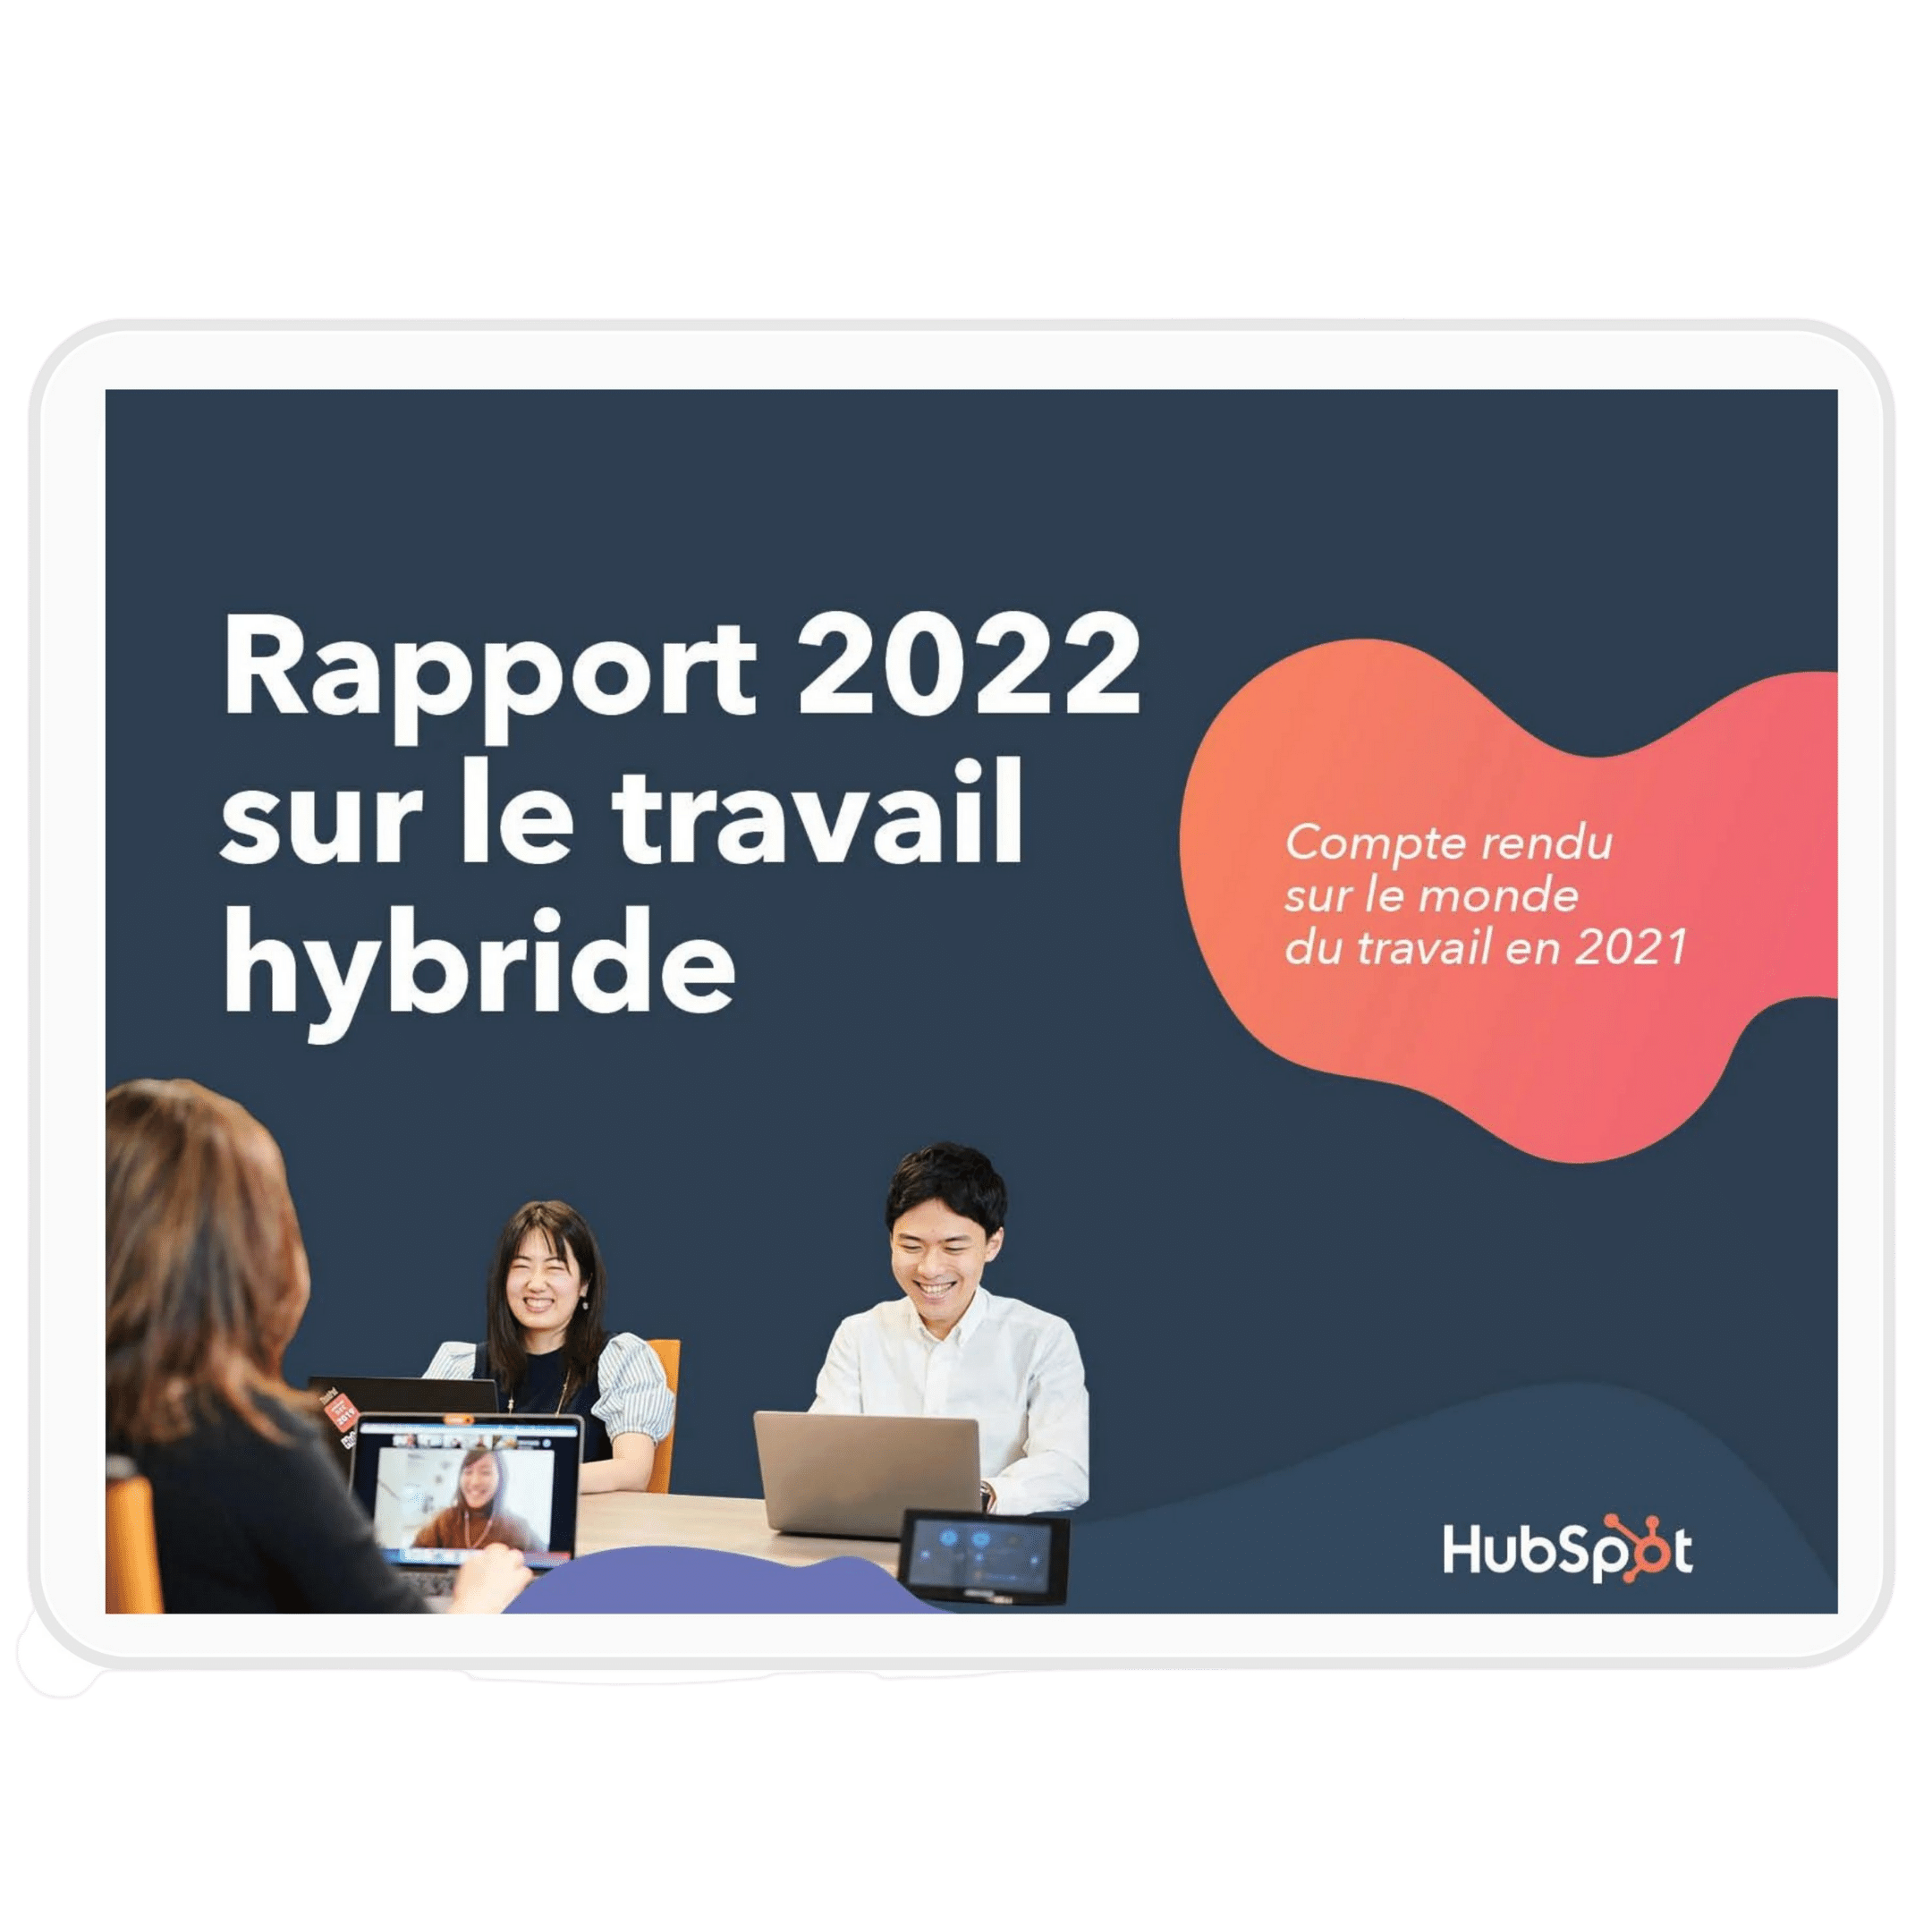 Rapport 2022 sur le travail hybride